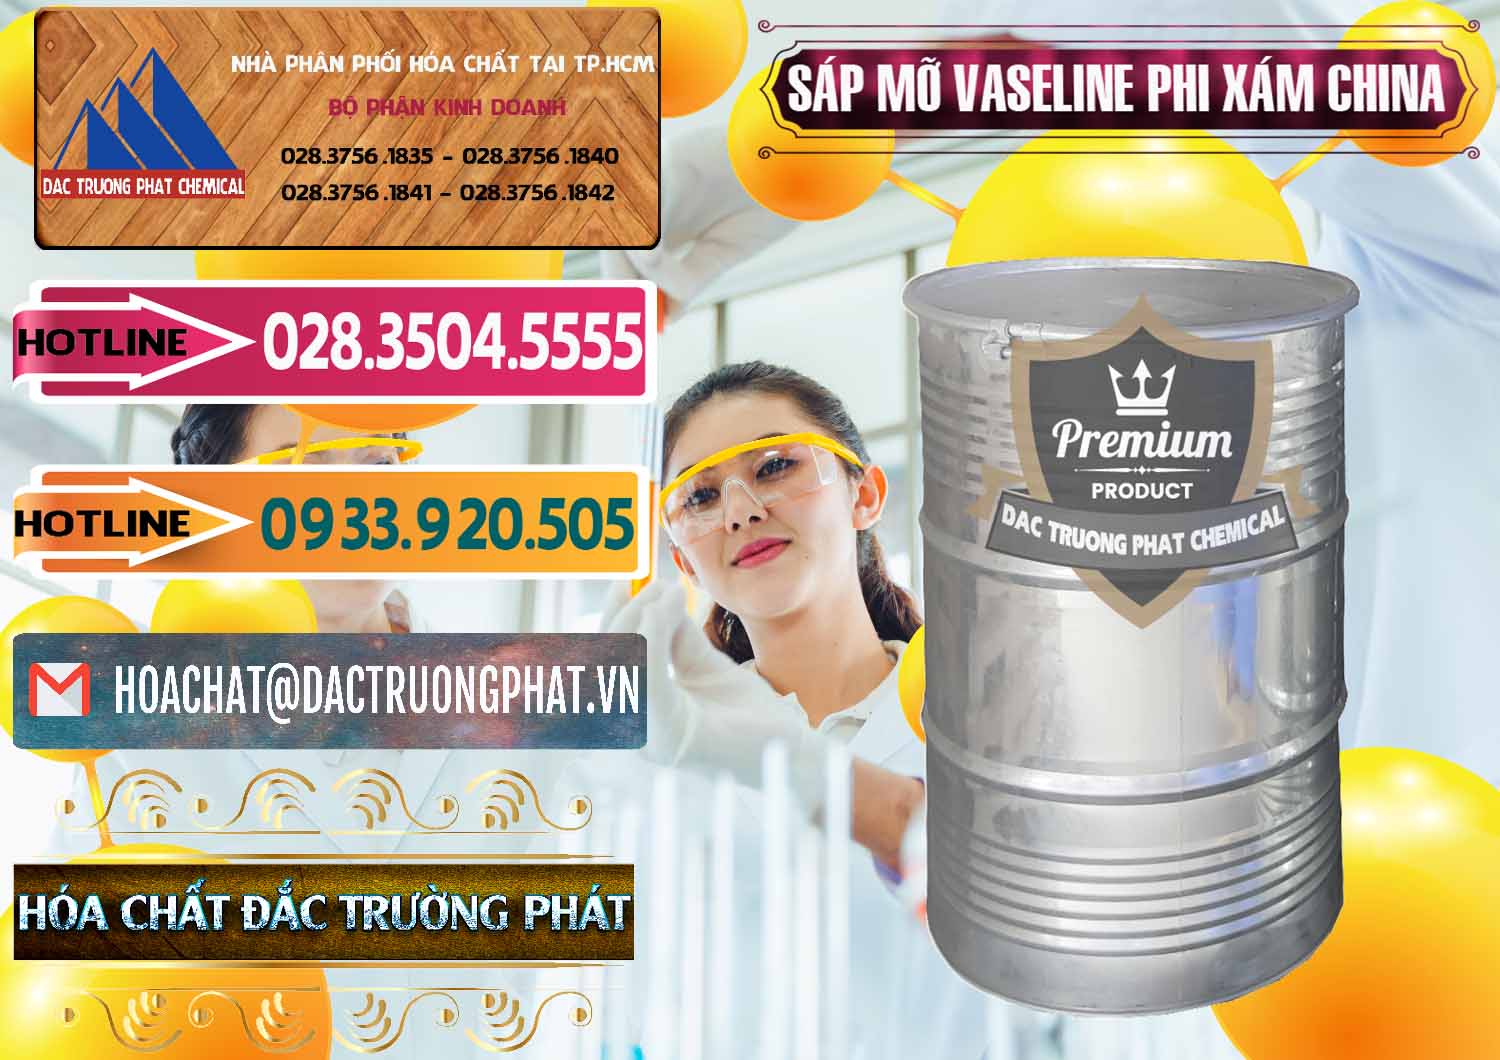 Nơi bán _ cung cấp Sáp Mỡ Vaseline Phi Xám Trung Quốc China - 0291 - Chuyên cung cấp ( bán ) hóa chất tại TP.HCM - dactruongphat.vn